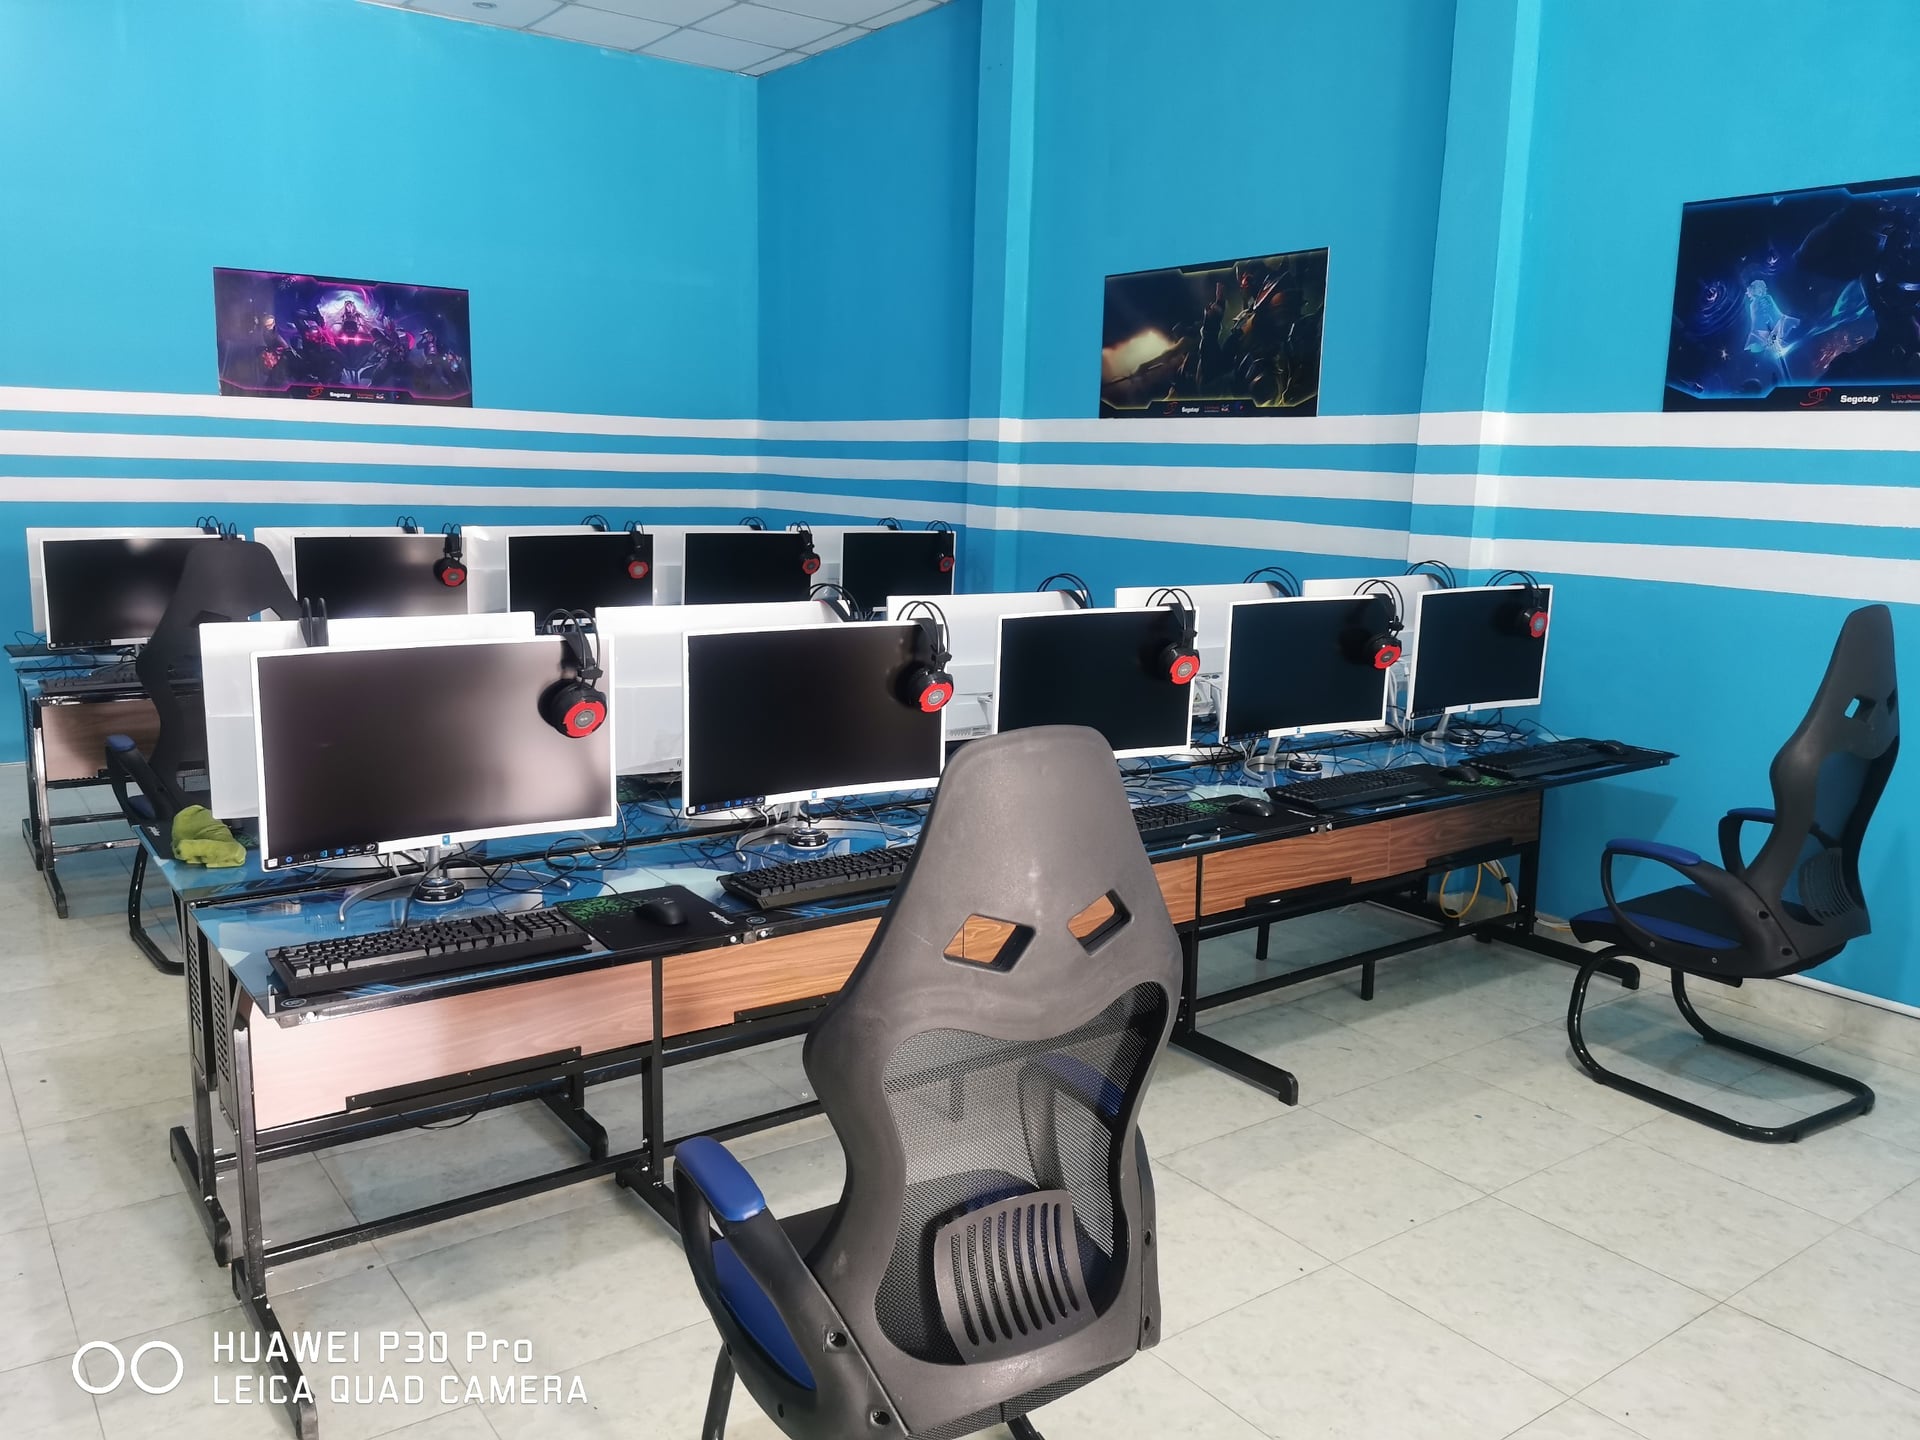 Quốc Đạt Computer - Thi công, lắp đặt phòng game net 20 máy trọn gói tại Tam Đảo - Vĩnh Phúc